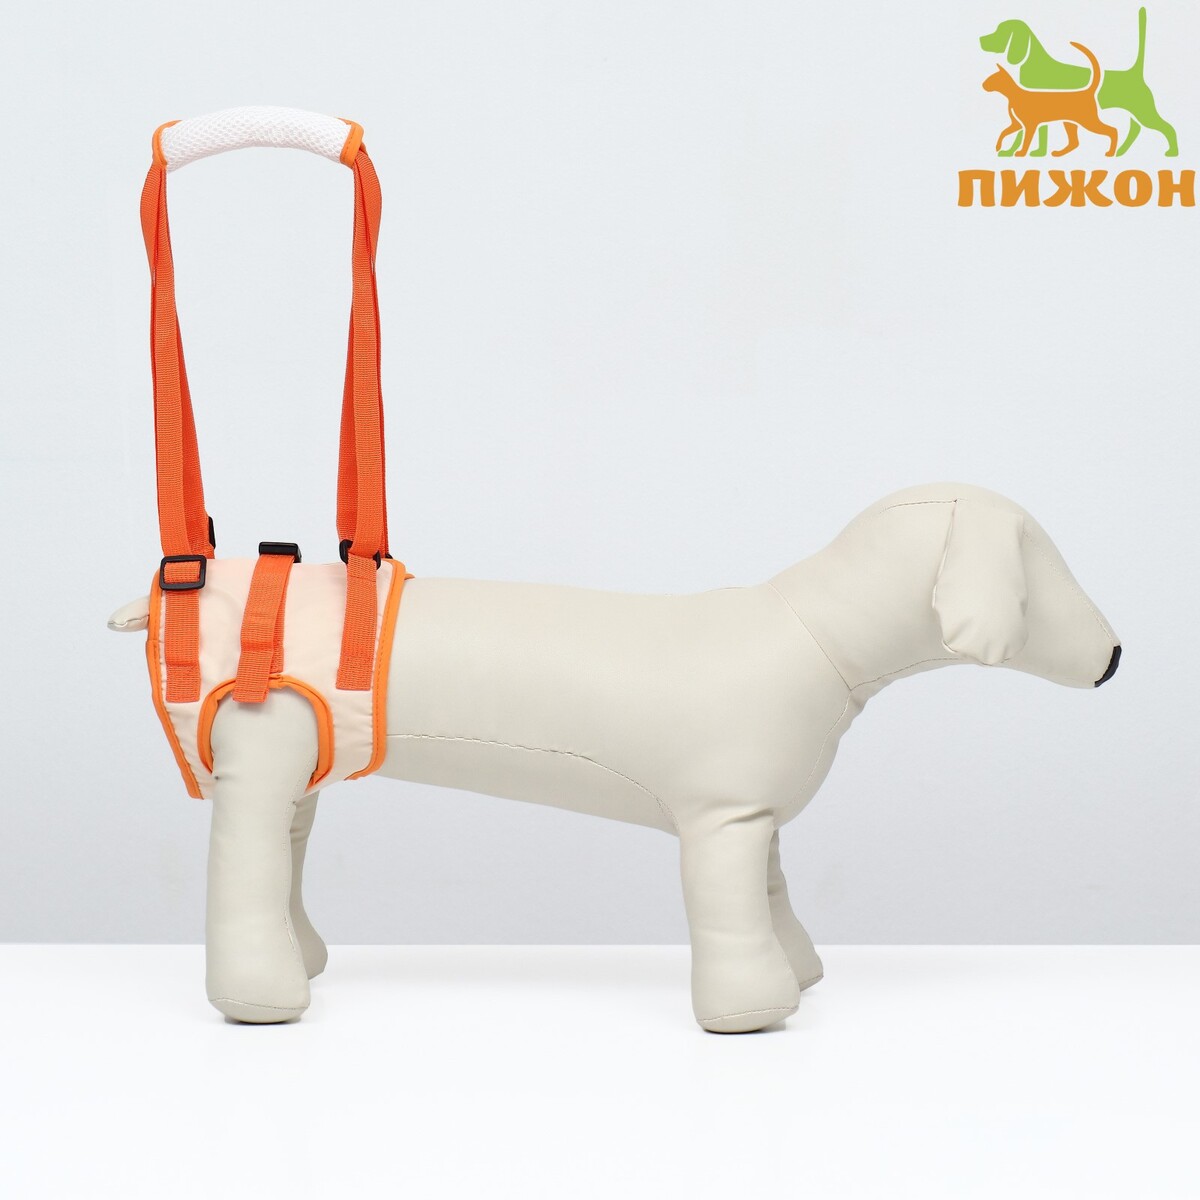 Ремень вспомогательный для задних лап, размер xl (от 63-72 см, вес 60-80 кг), оранжевый оранжевый тканевый ремень для мальчика 90 см